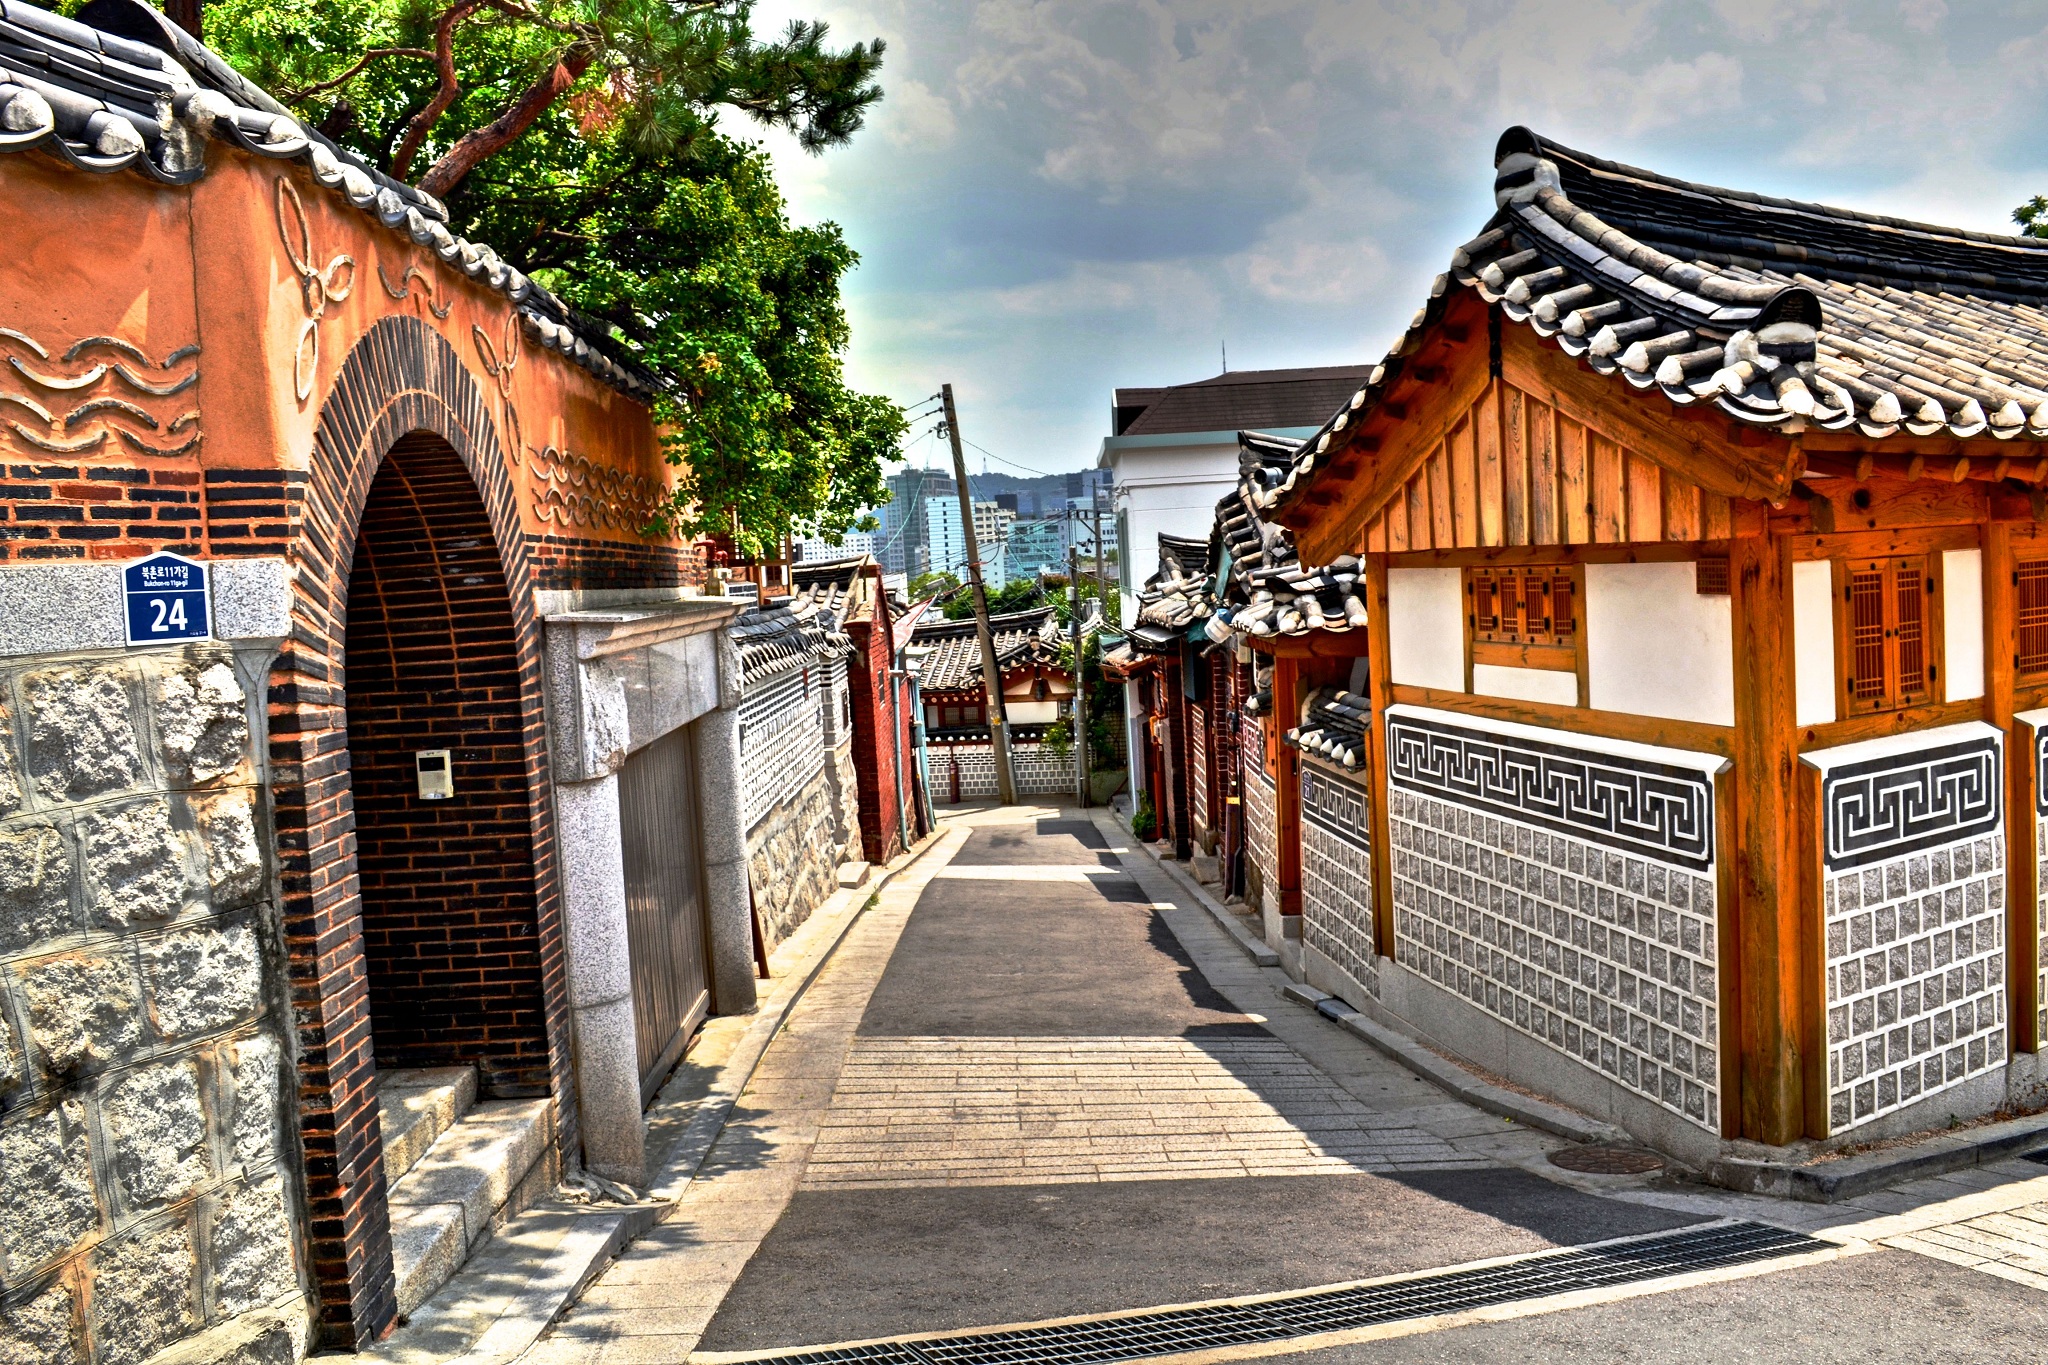 Seoul thủ đô, với sự pha trộn giữa văn hóa truyền thống và hiện đại, là một trong những điểm đến hấp dẫn nhất ở Hàn Quốc. Nơi đây có những khu phố đông đúc, công viên xanh mát, những quán cà phê cổ điển, tất cả sẽ khiến bạn cảm thấy bị thu hút và muốn đến thăm ngay lập tức.